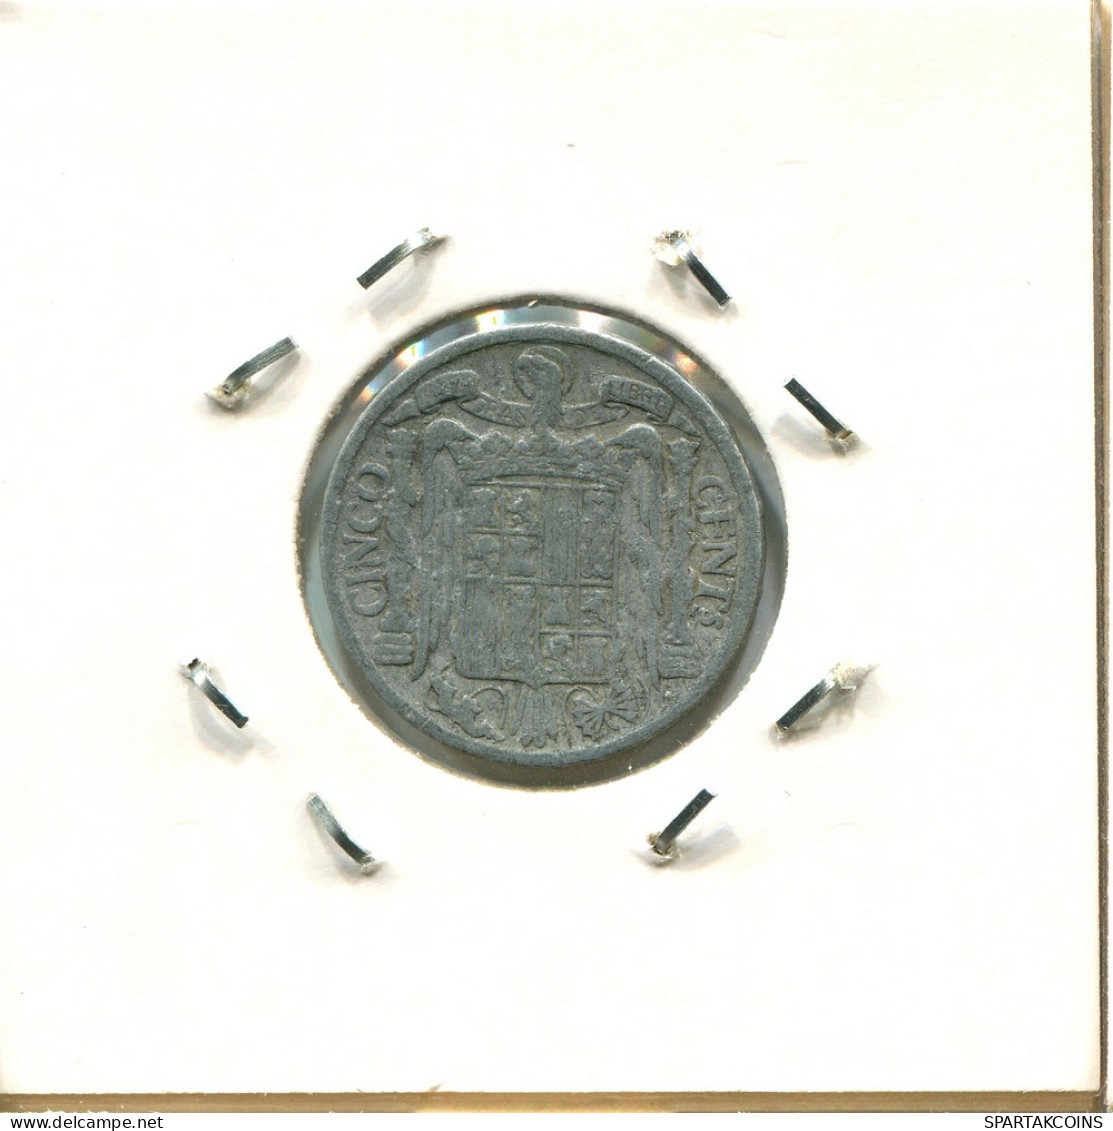 5 CENTIMOS 1945 ESPAÑA Moneda SPAIN #AZ968.E - 5 Céntimos